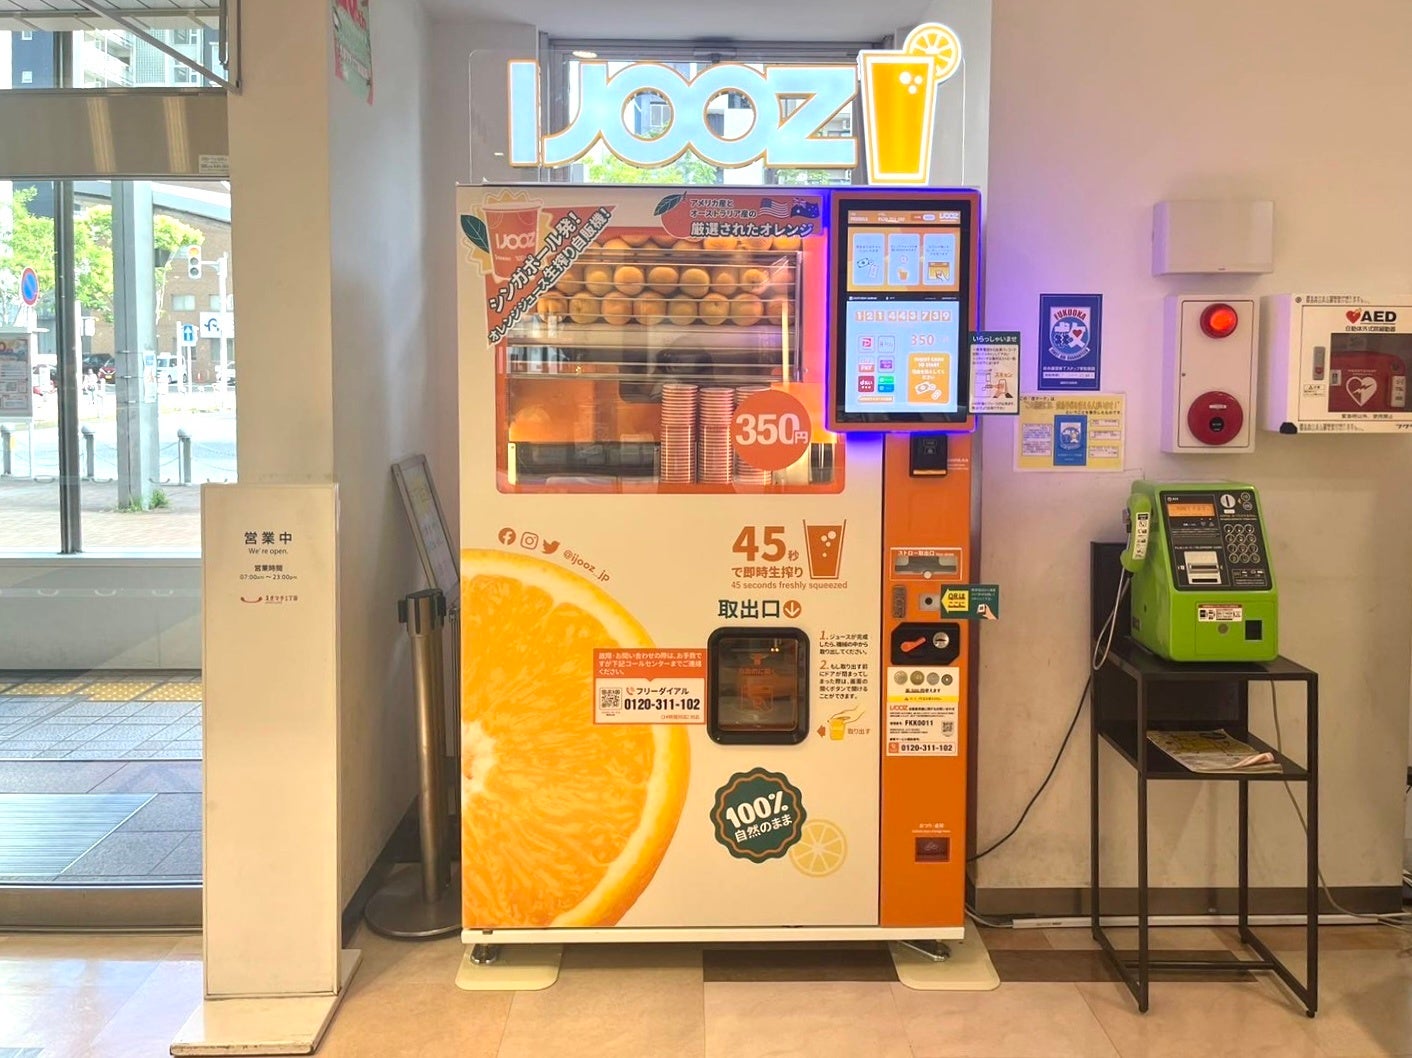 【福岡市西区】えきマチ1丁目姪浜で350円生搾りオレンジジュース自販機「IJOOZ」が稼働開始